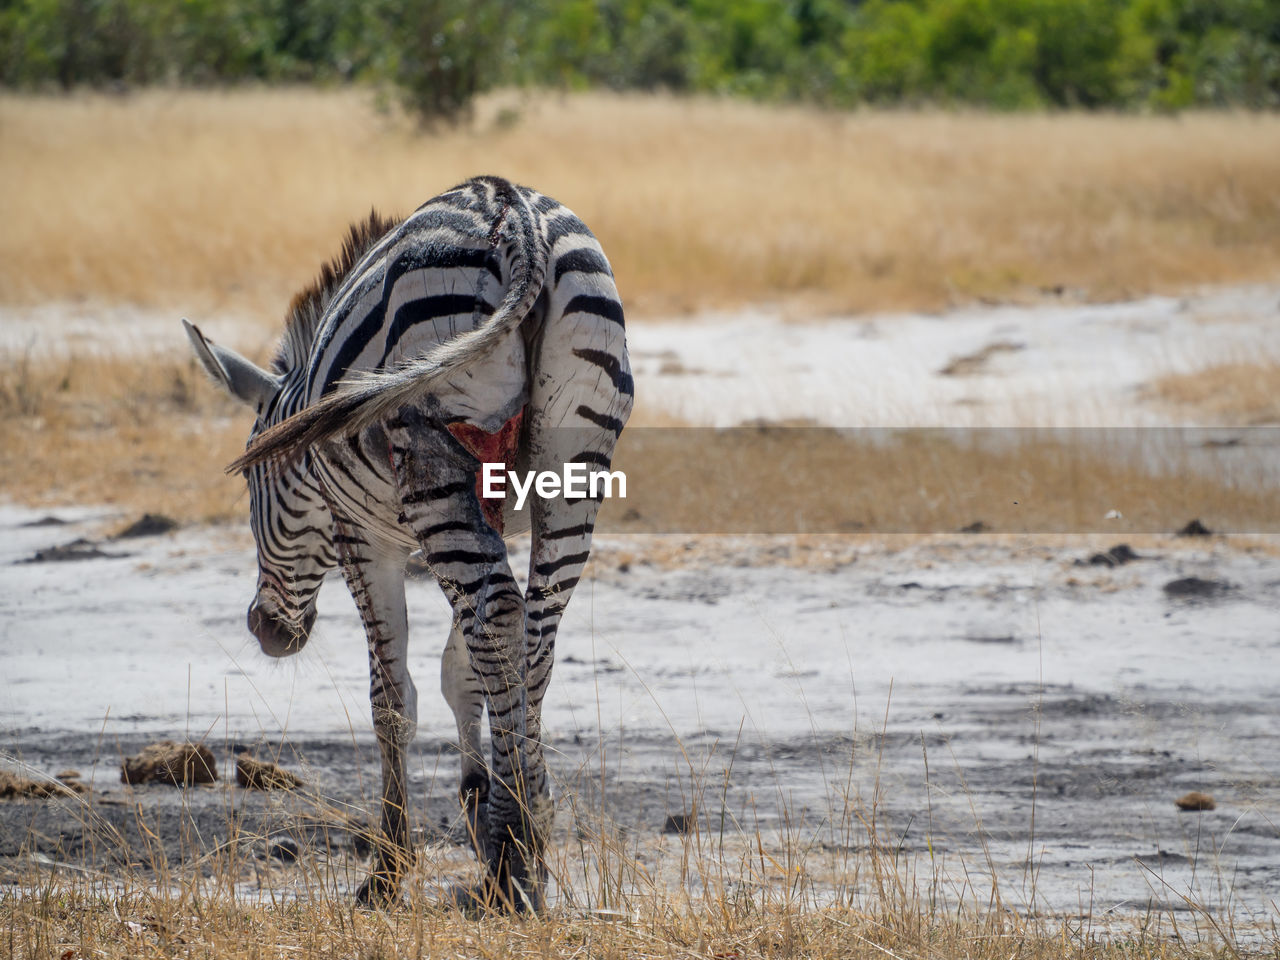 Injured zebra walking in savannah, moremi game reserve, botswana, africa